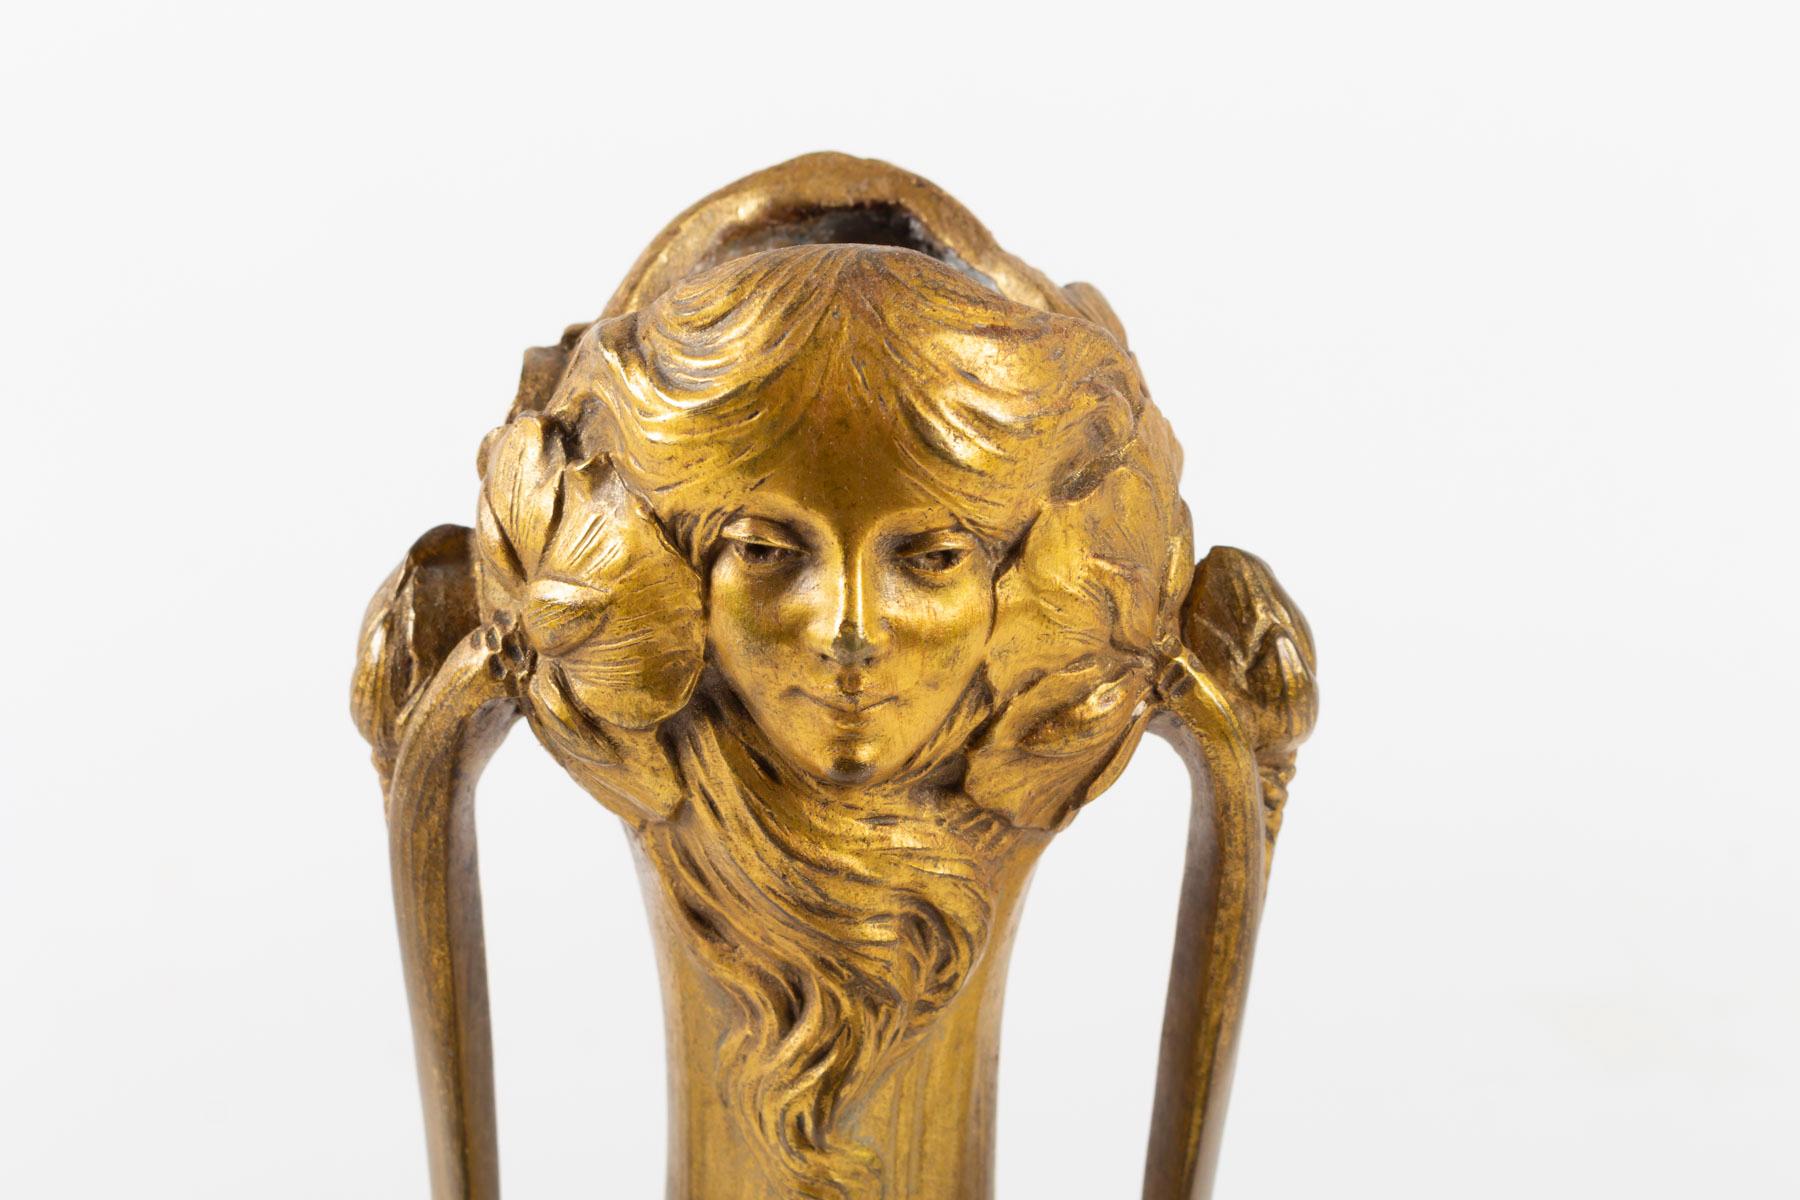 Maurel bronze vase, Art Nouveau, 1900
Measures: H 31cm, D 13cm.